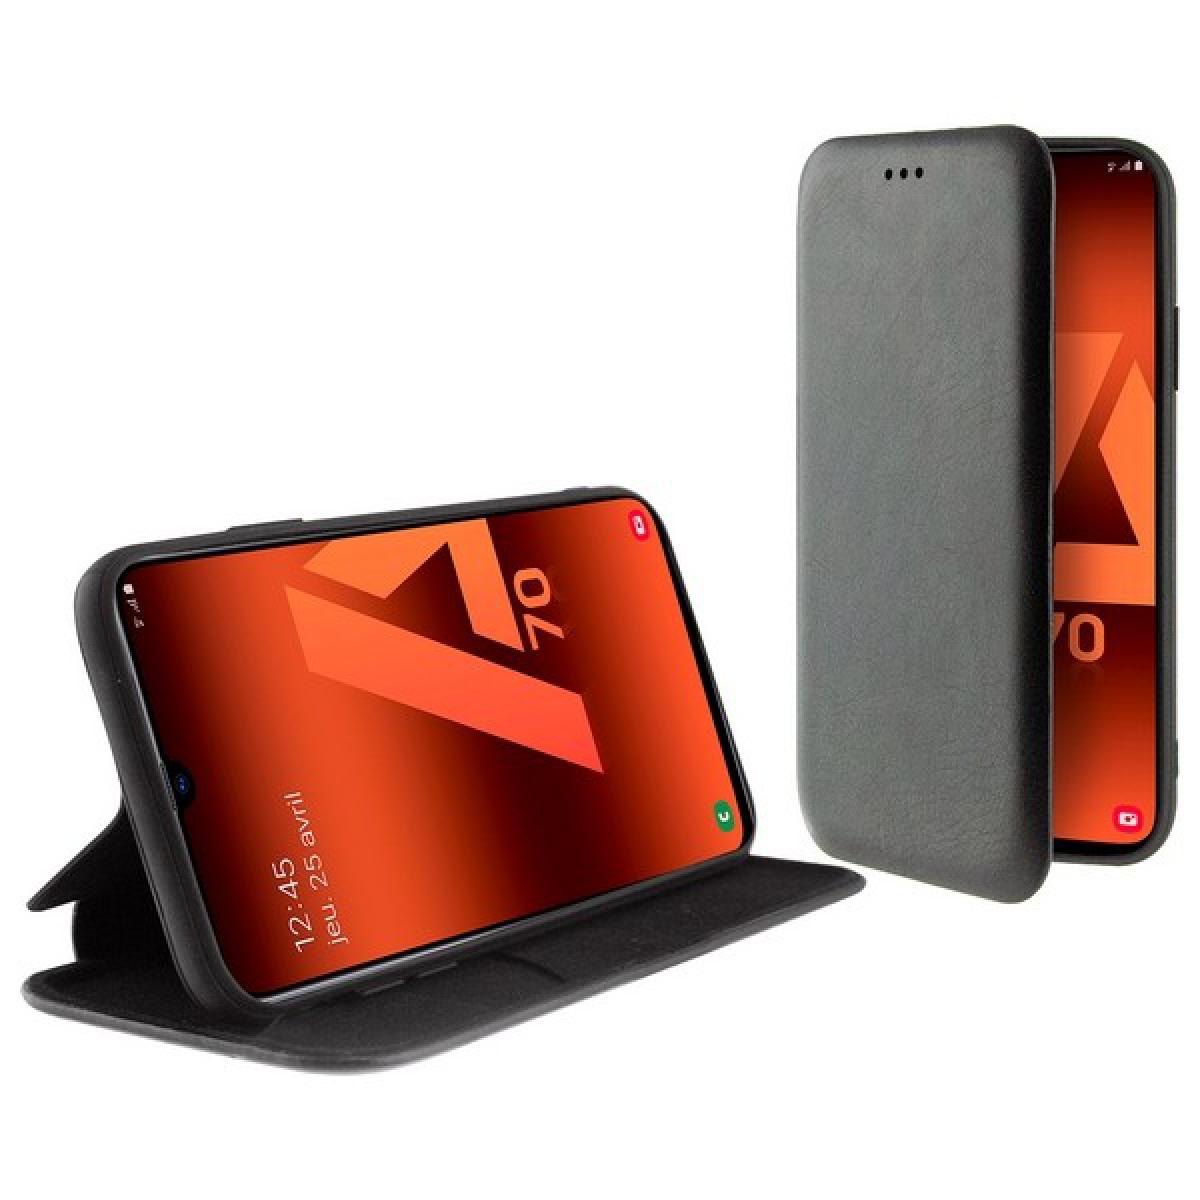 Totalcadeau - Etui livre compatible téléphone portable Samsung Galaxy A70 Noir Pas cher - Coque, étui smartphone